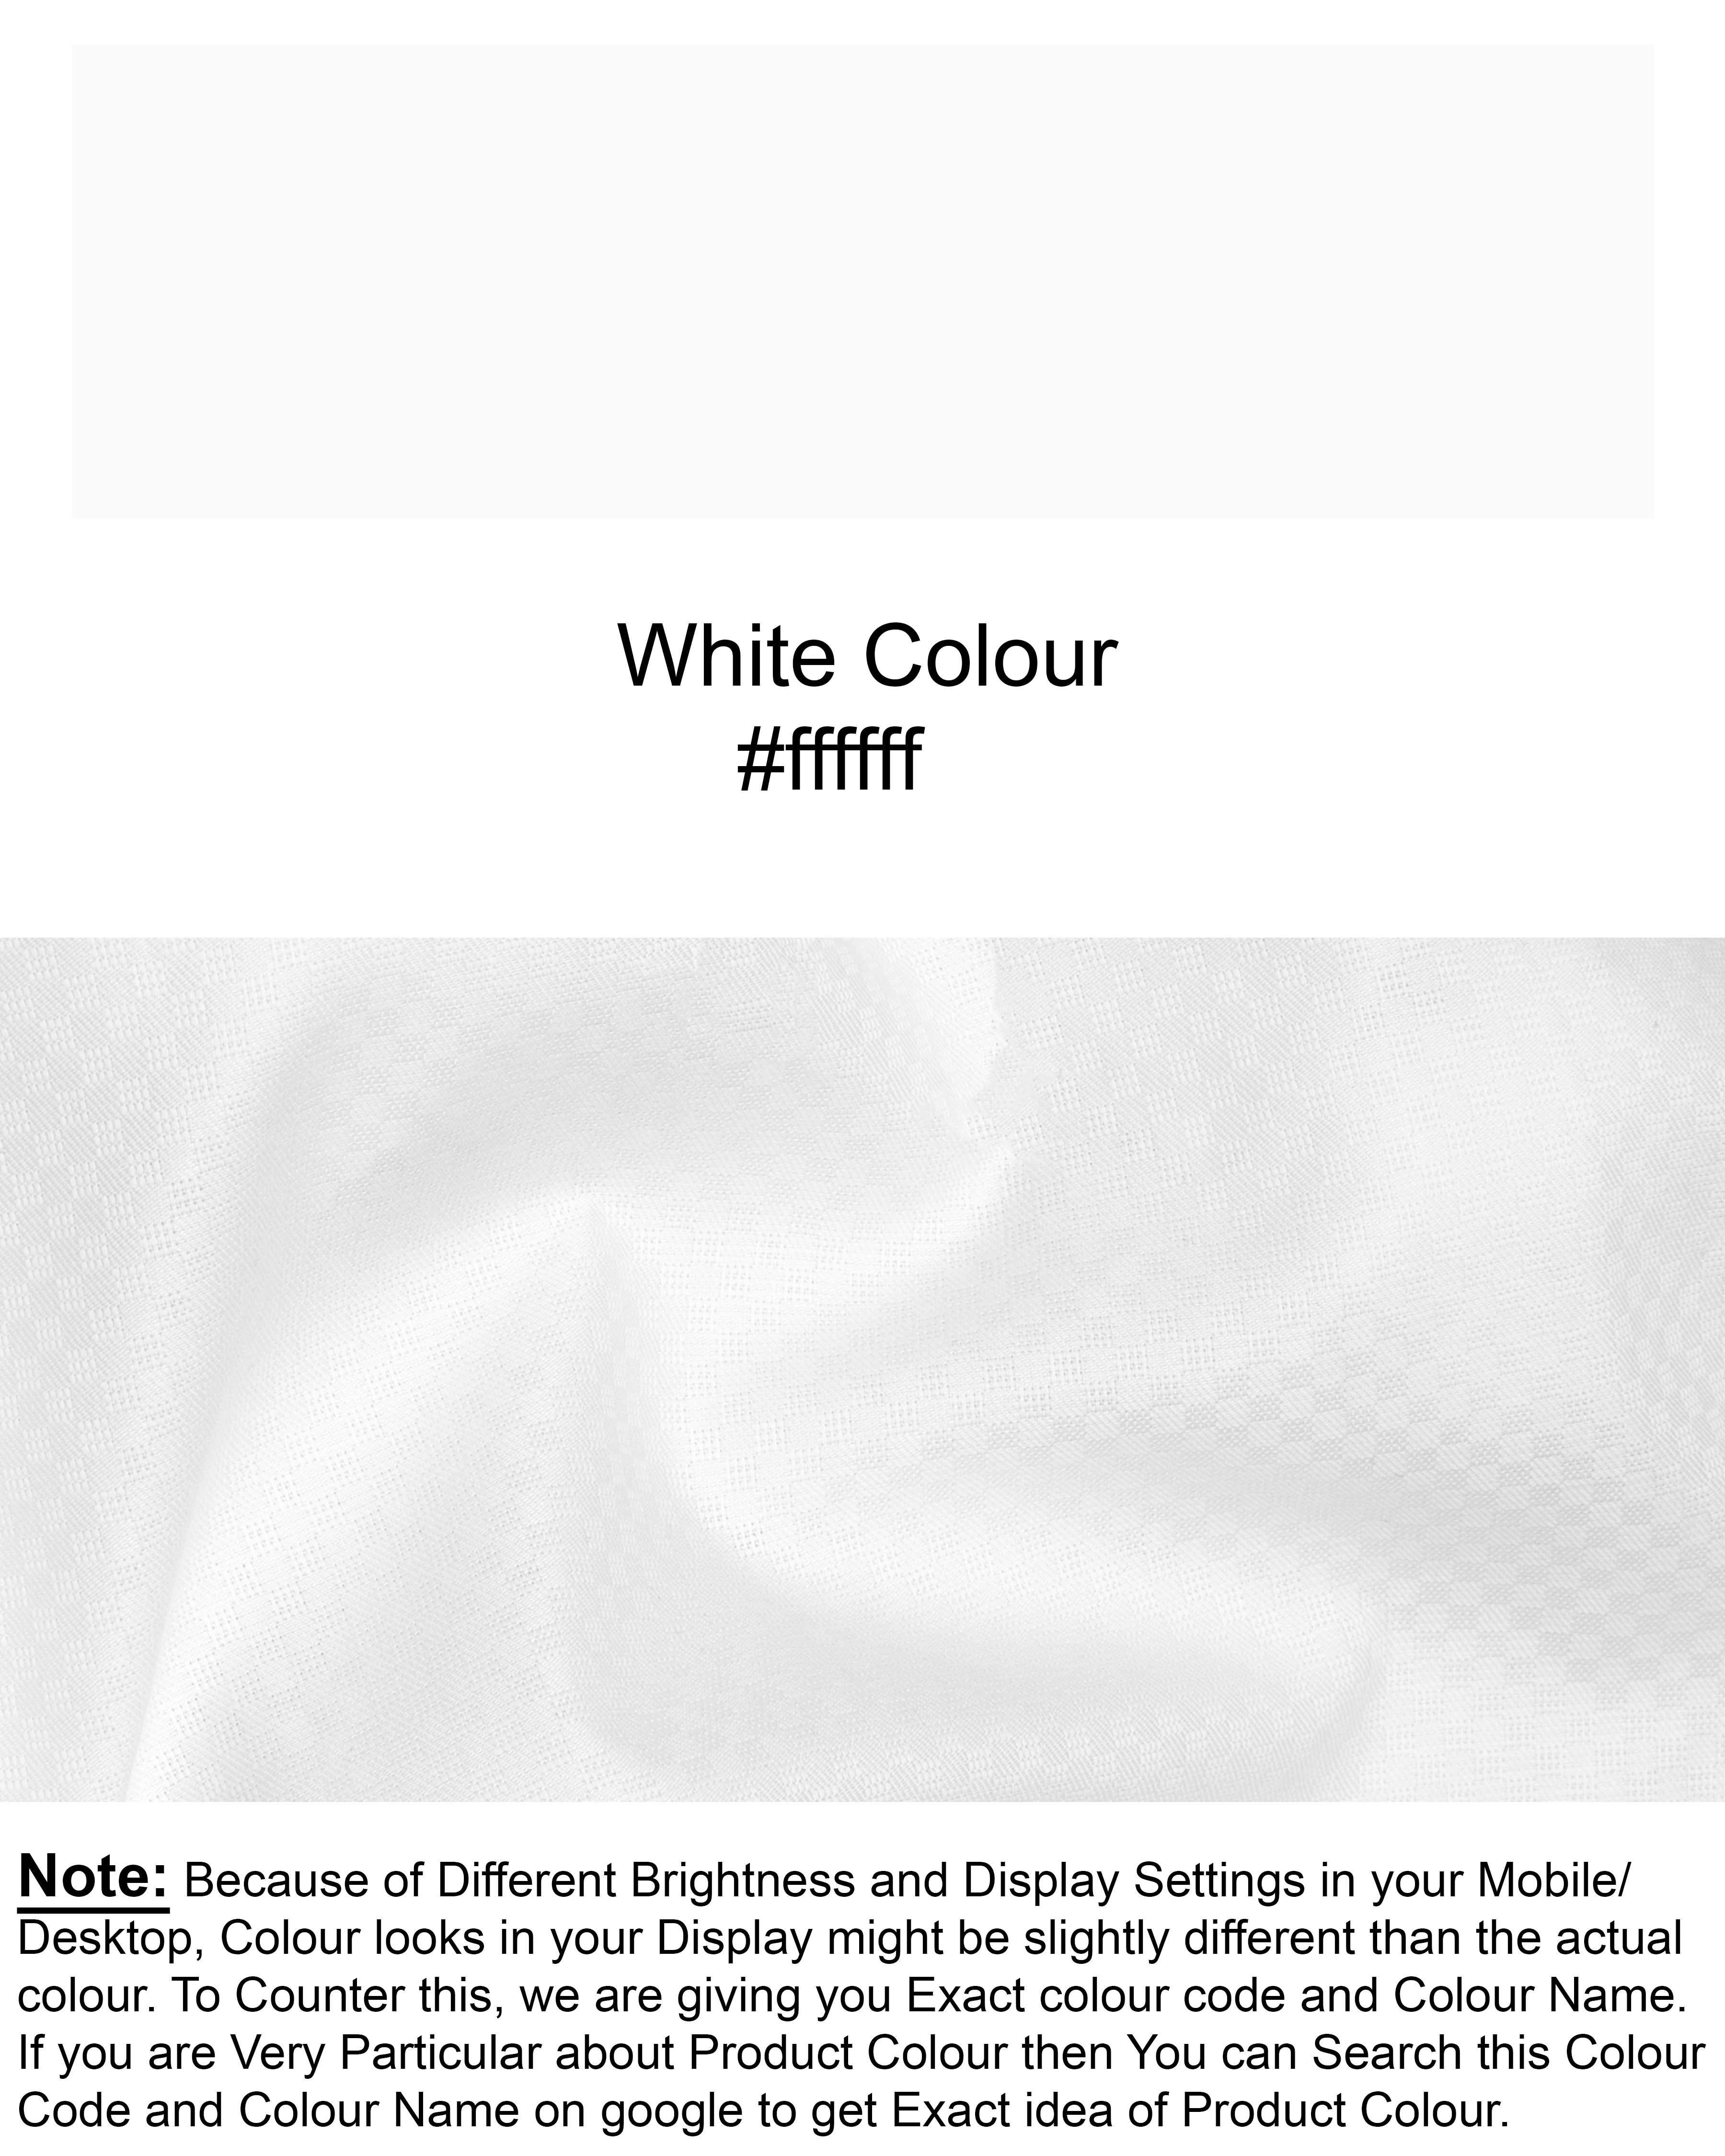 Bright White Dobby Textured Premium Giza Cotton Shirt 5653-CA-BLK-38, 5653-CA-BLK-H-38, 5653-CA-BLK-39, 5653-CA-BLK-H-39, 5653-CA-BLK-40, 5653-CA-BLK-H-40, 5653-CA-BLK-42, 5653-CA-BLK-H-42, 5653-CA-BLK-44, 5653-CA-BLK-H-44, 5653-CA-BLK-46, 5653-CA-BLK-H-46, 5653-CA-BLK-48, 5653-CA-BLK-H-48, 5653-CA-BLK-50, 5653-CA-BLK-H-50, 5653-CA-BLK-52, 5653-CA-BLK-H-52